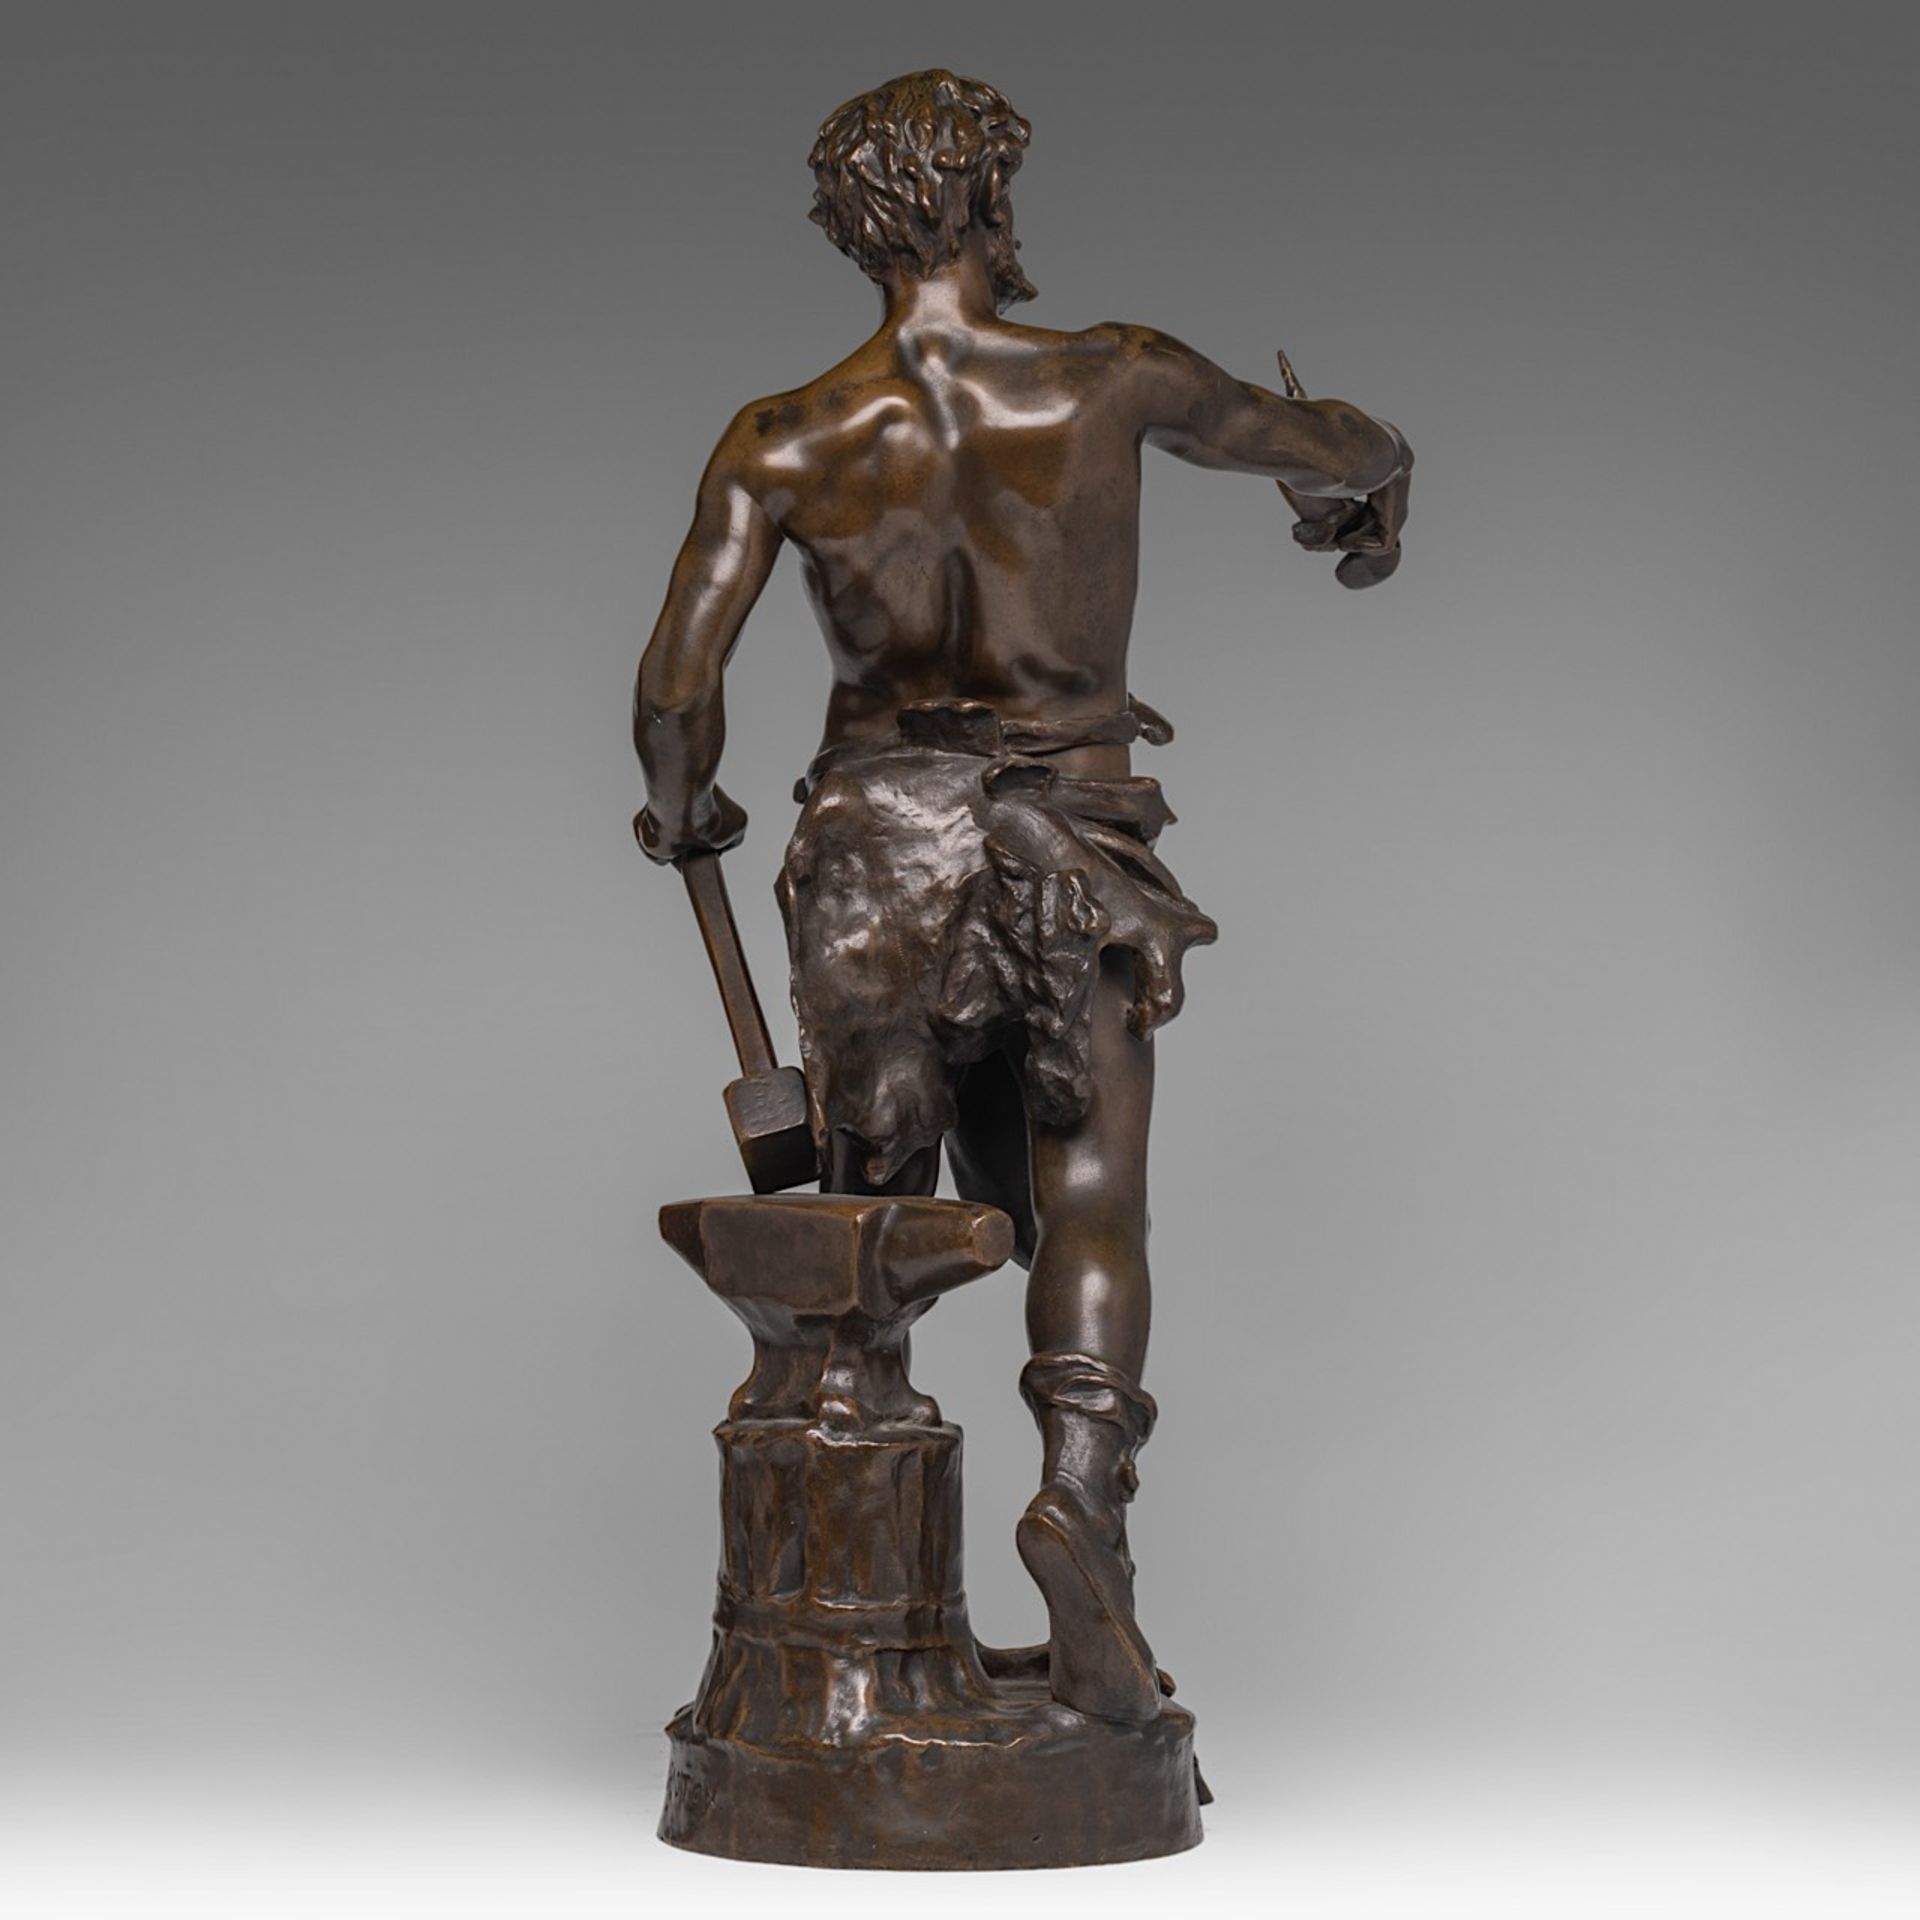 Claudius Mariton (1844-1919), 'Le Travail', patinated bronze, H 65 cm - Image 4 of 6